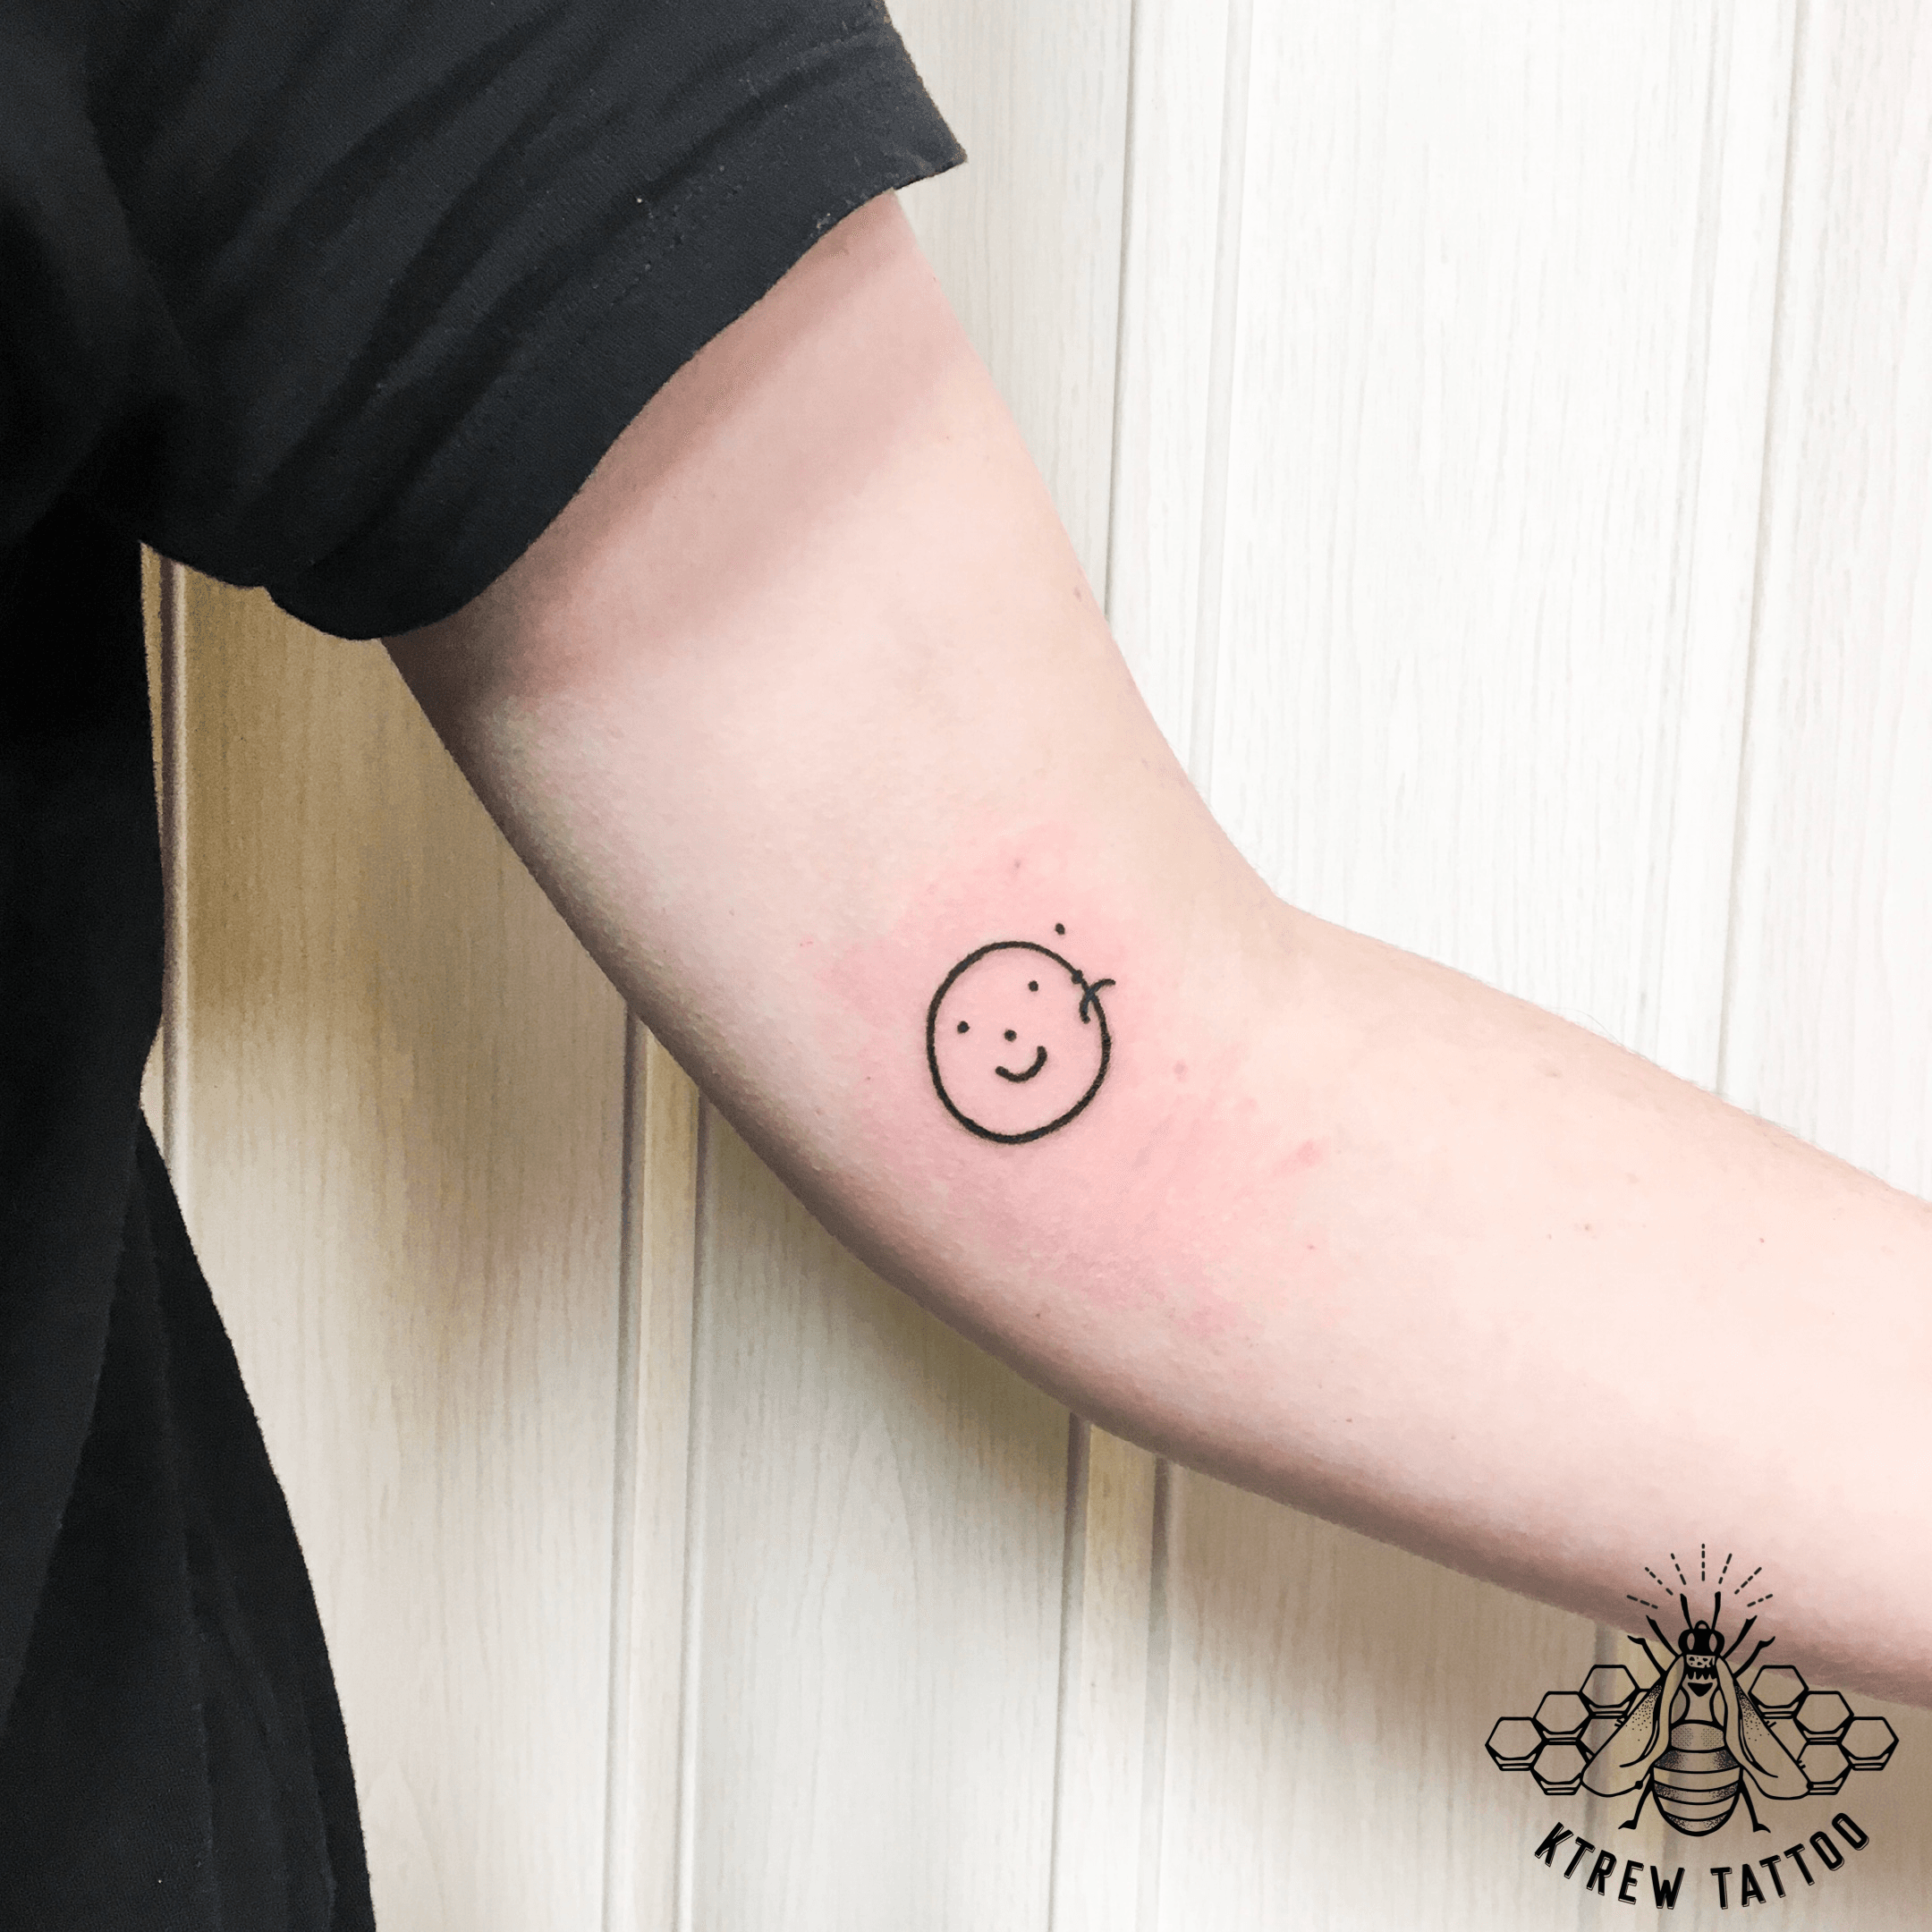 Tattoo Uploaded By Ktrew Tattoo • Smiley Sad Face Linework Tattoo By  Kirstie Trew @ Ktrew Tattoo • Birmingham Uk ?? #Linework #Smileyface # Sadface #Birminghamuk #Simpletattoo #Birmingham • Tattoodo